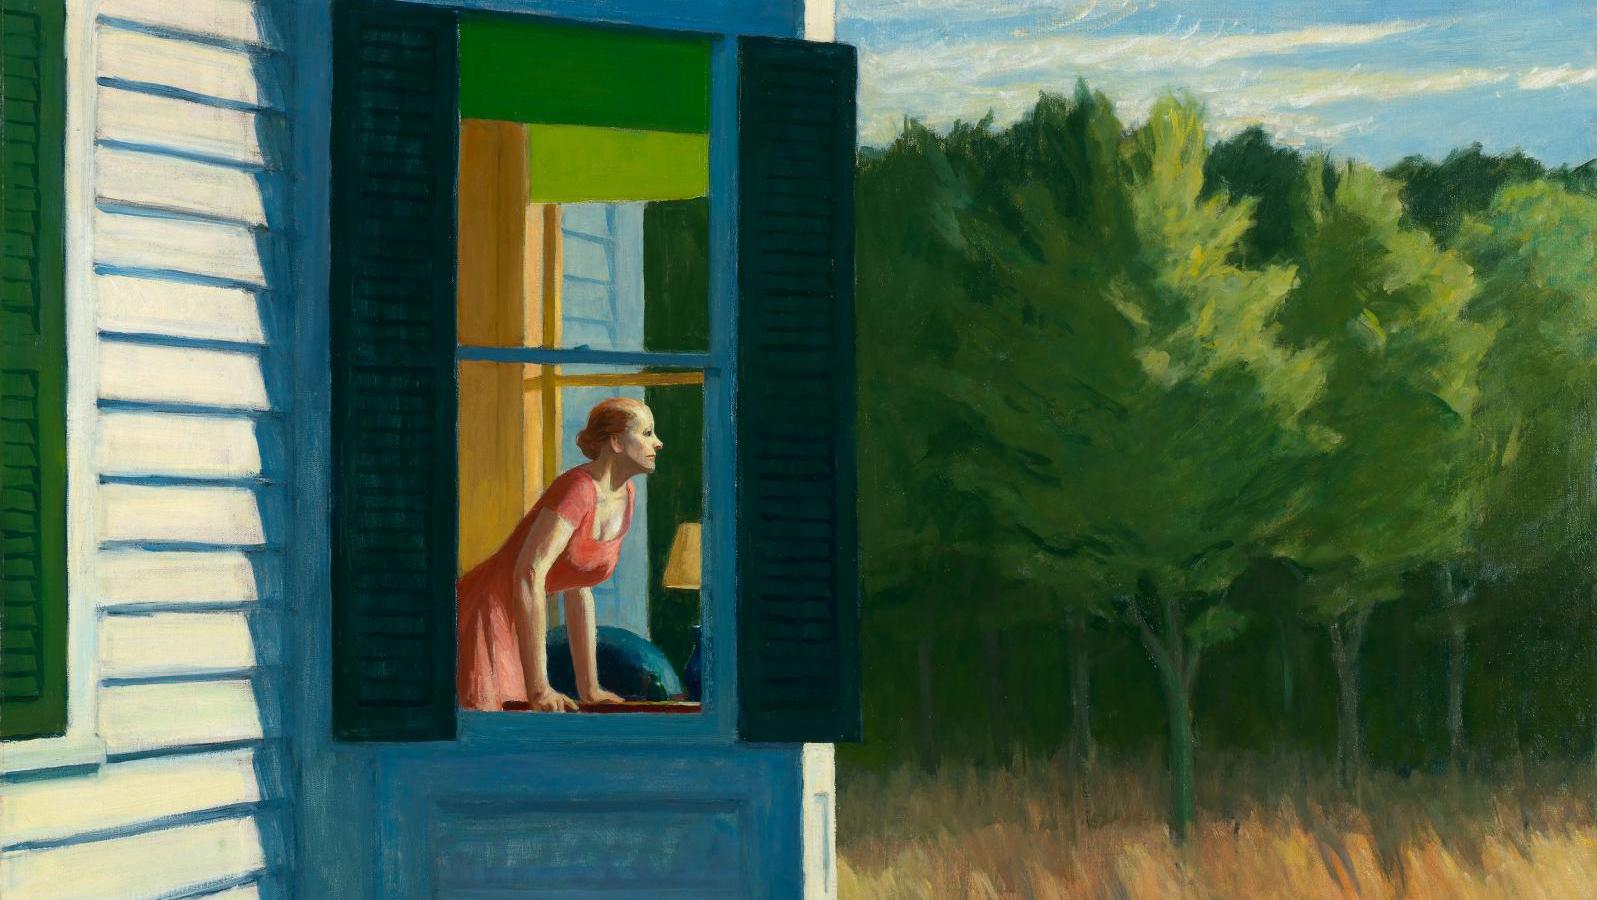 Edward Hopper, Cape Cod Morning, 1950, huile sur toile, 86,7 x 102,3 cm (détail).... Le mystère Hopper à la fondation Beyeler